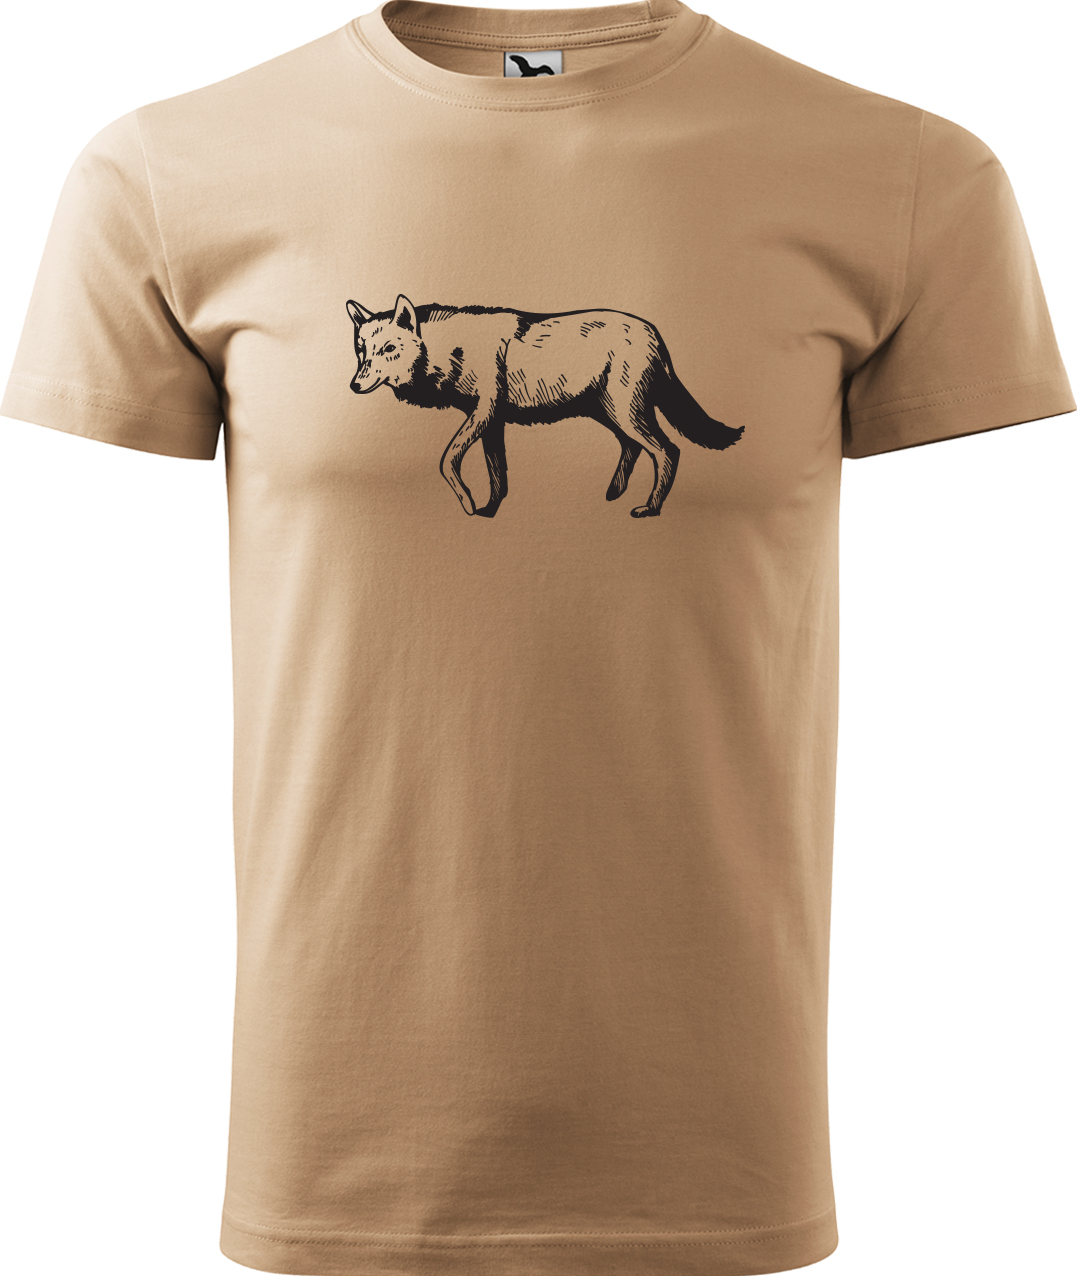 Pánské tričko s vlkem - Vlk Velikost: M, Barva: Písková (08), Střih: pánský